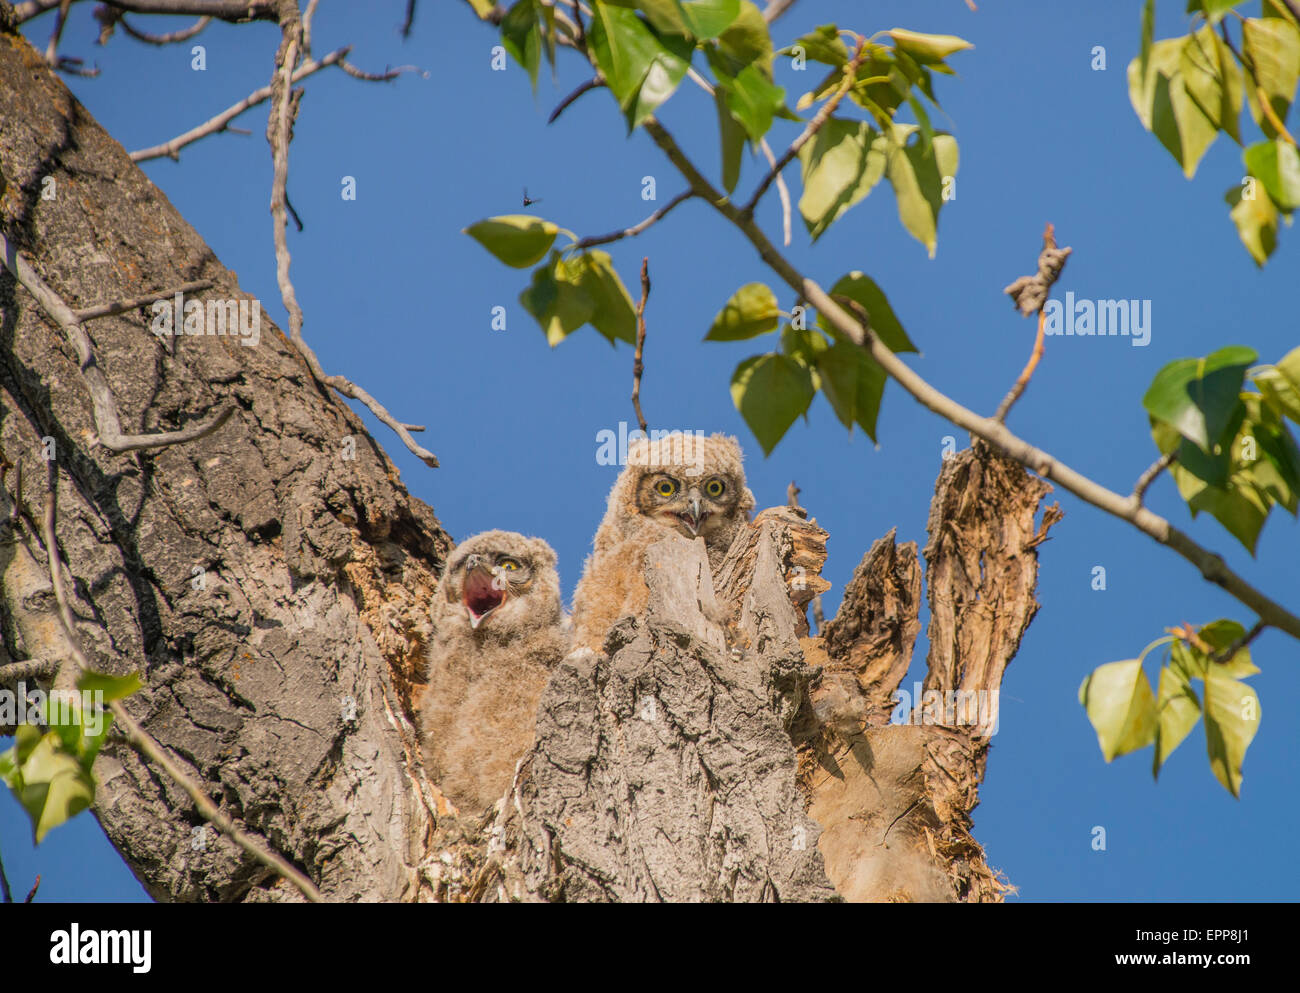 Les hiboux,Grand-duc d'Amérique, New Born Owlets perché en nid d'empreinte de l'arbre. Boise River Greenbelt, Boise, Idaho, USA Banque D'Images